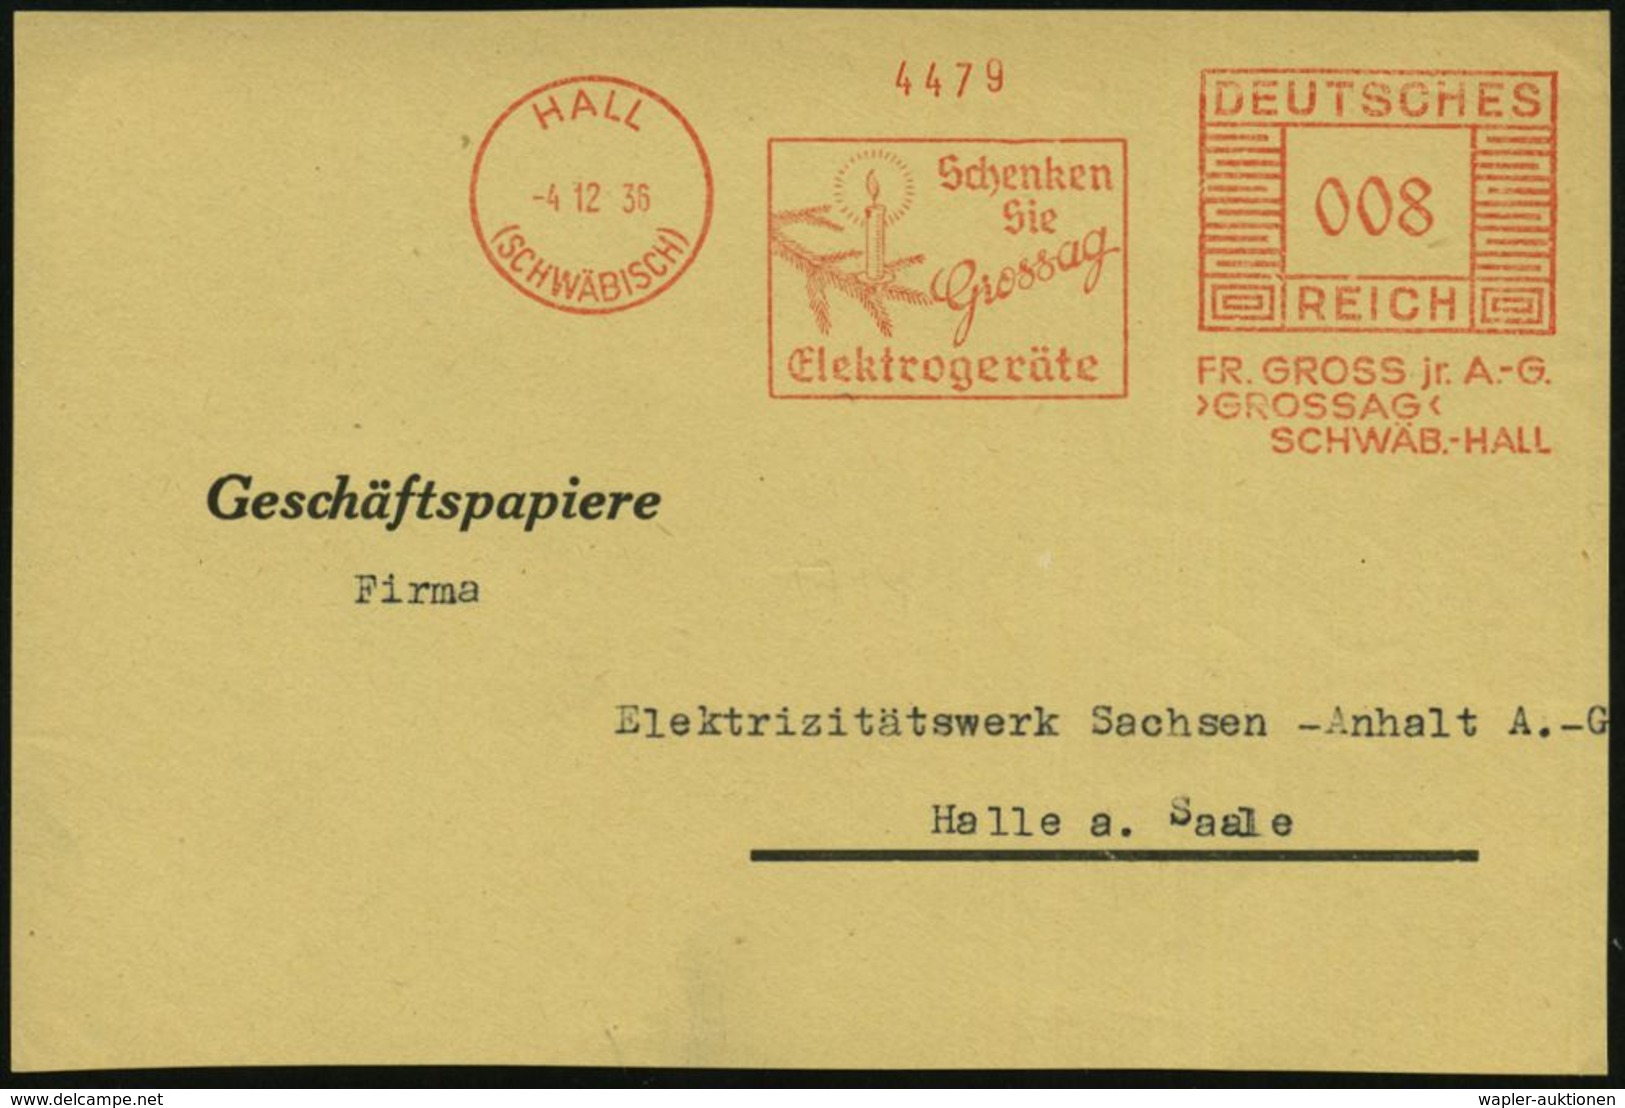 HALL/ (SCHWÄBISCH)/ Schenken/ Sie/ Grossag/ Elektrogeräte/ FT.GROSS Jr.A.-G. 1936 (4.12.) Seltener AFS = Zweig Mit Kerze - Navidad